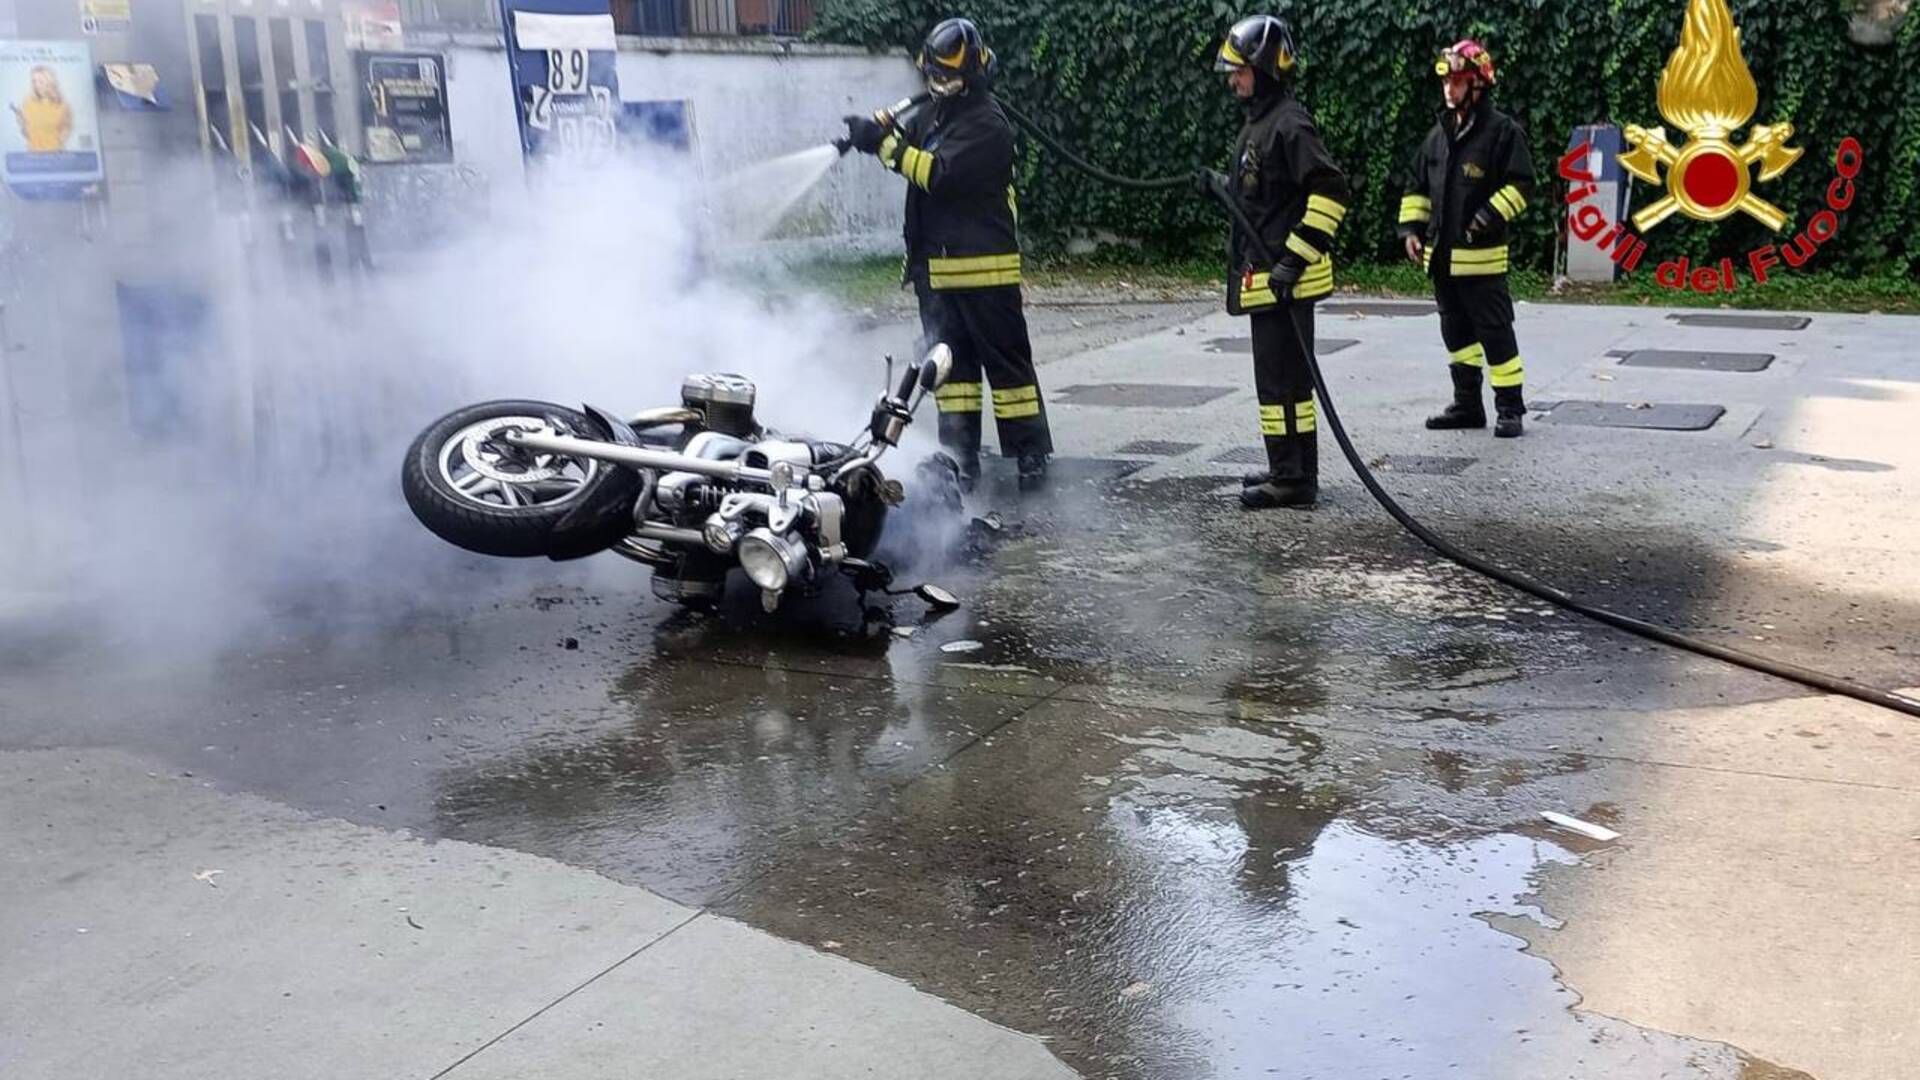 Moto in fiamme dopo il pieno al distributore